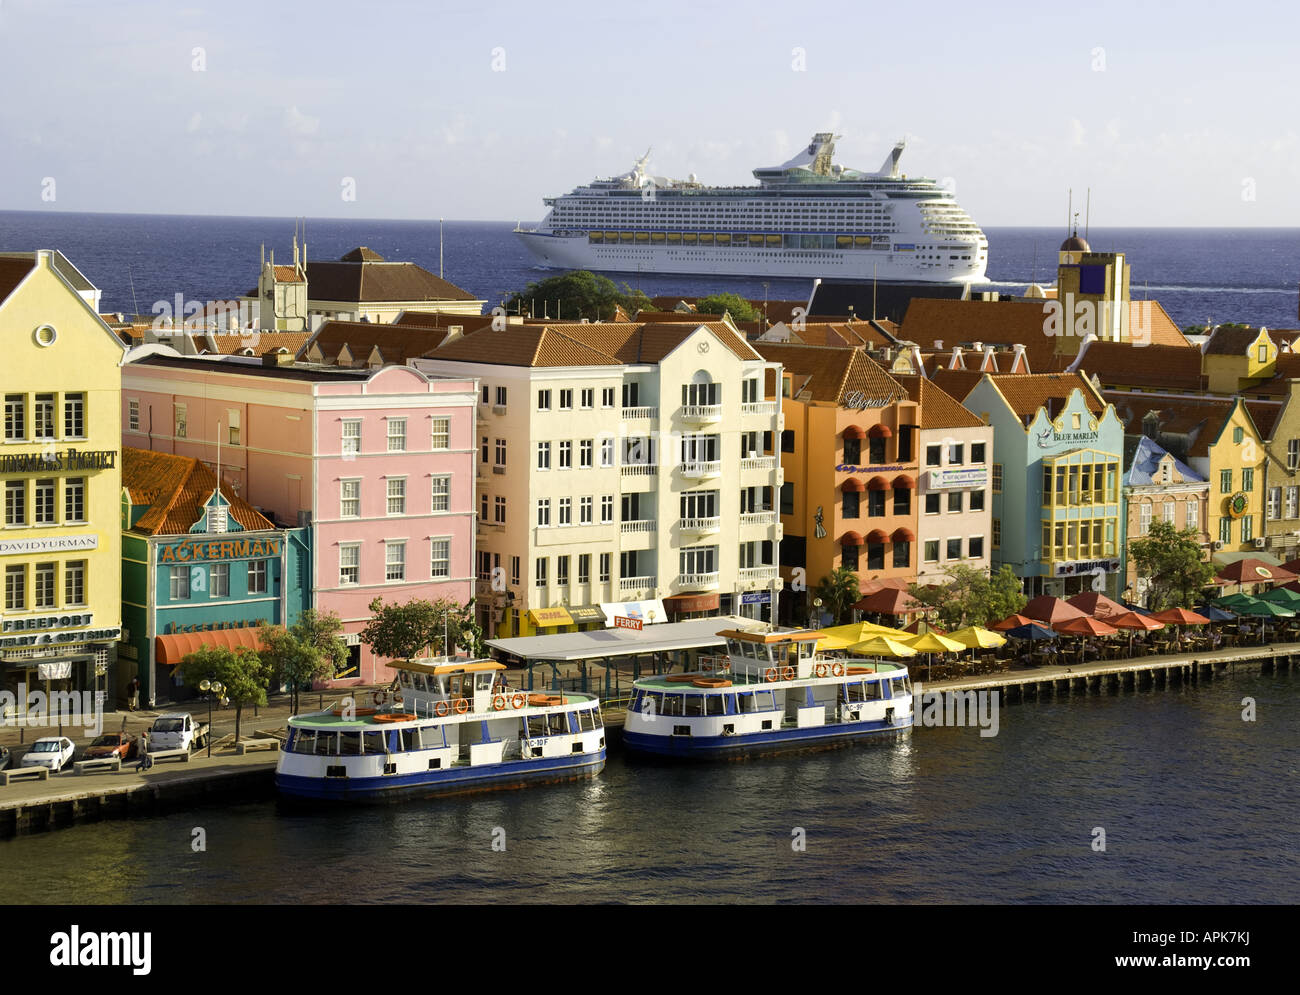 Willemstad es Punda waterfront pastel arquitectura holandesa con Royal Caribbean Cruise Ship aventura de los mares de abandonar el puerto Foto de stock